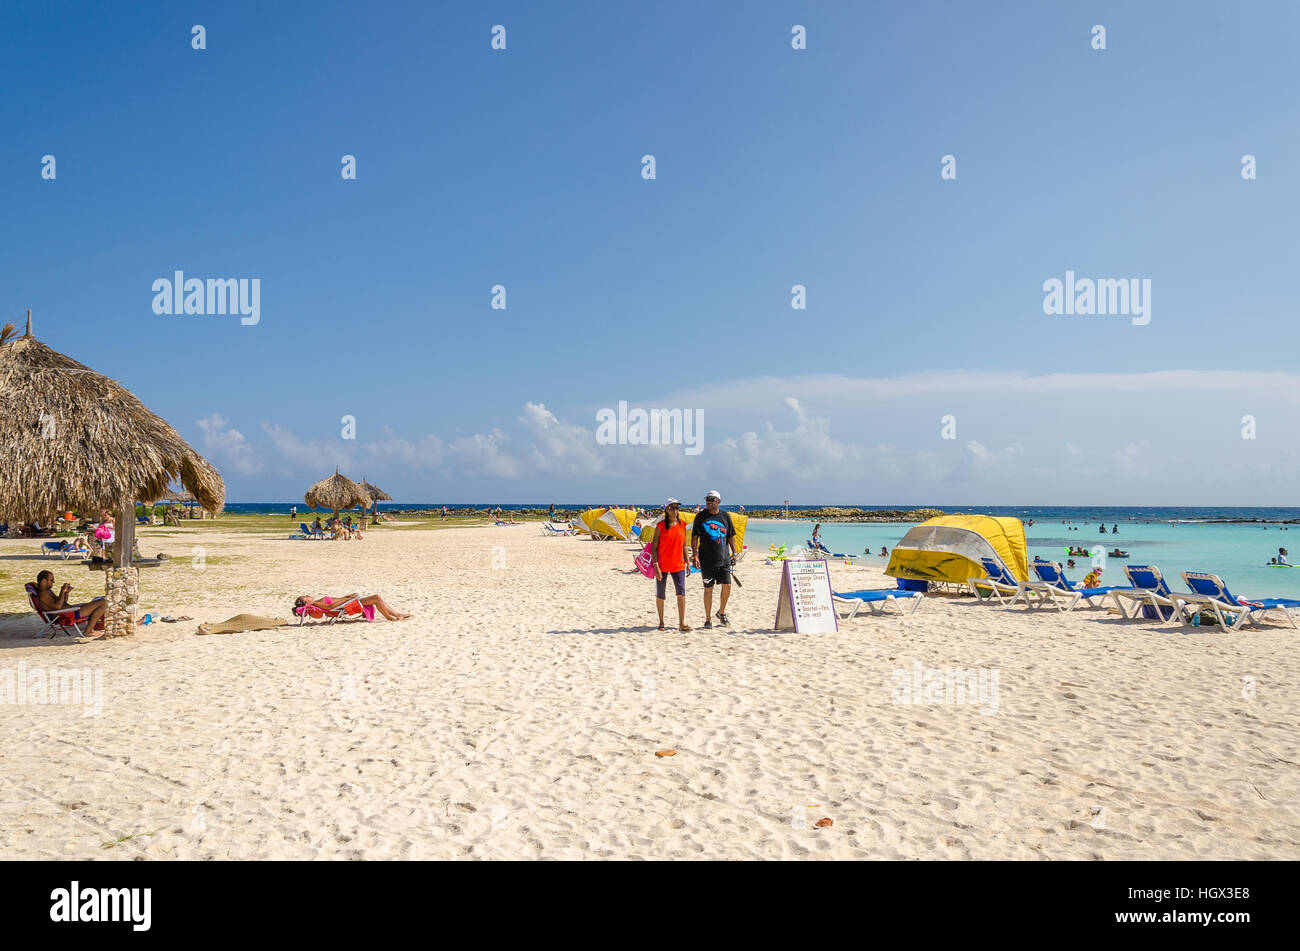 Aruba, dei Caraibi - 26 Settembre 2012: Vista di turisti che si godono baby beach ad Aruba isola del Mar dei Caraibi Foto Stock